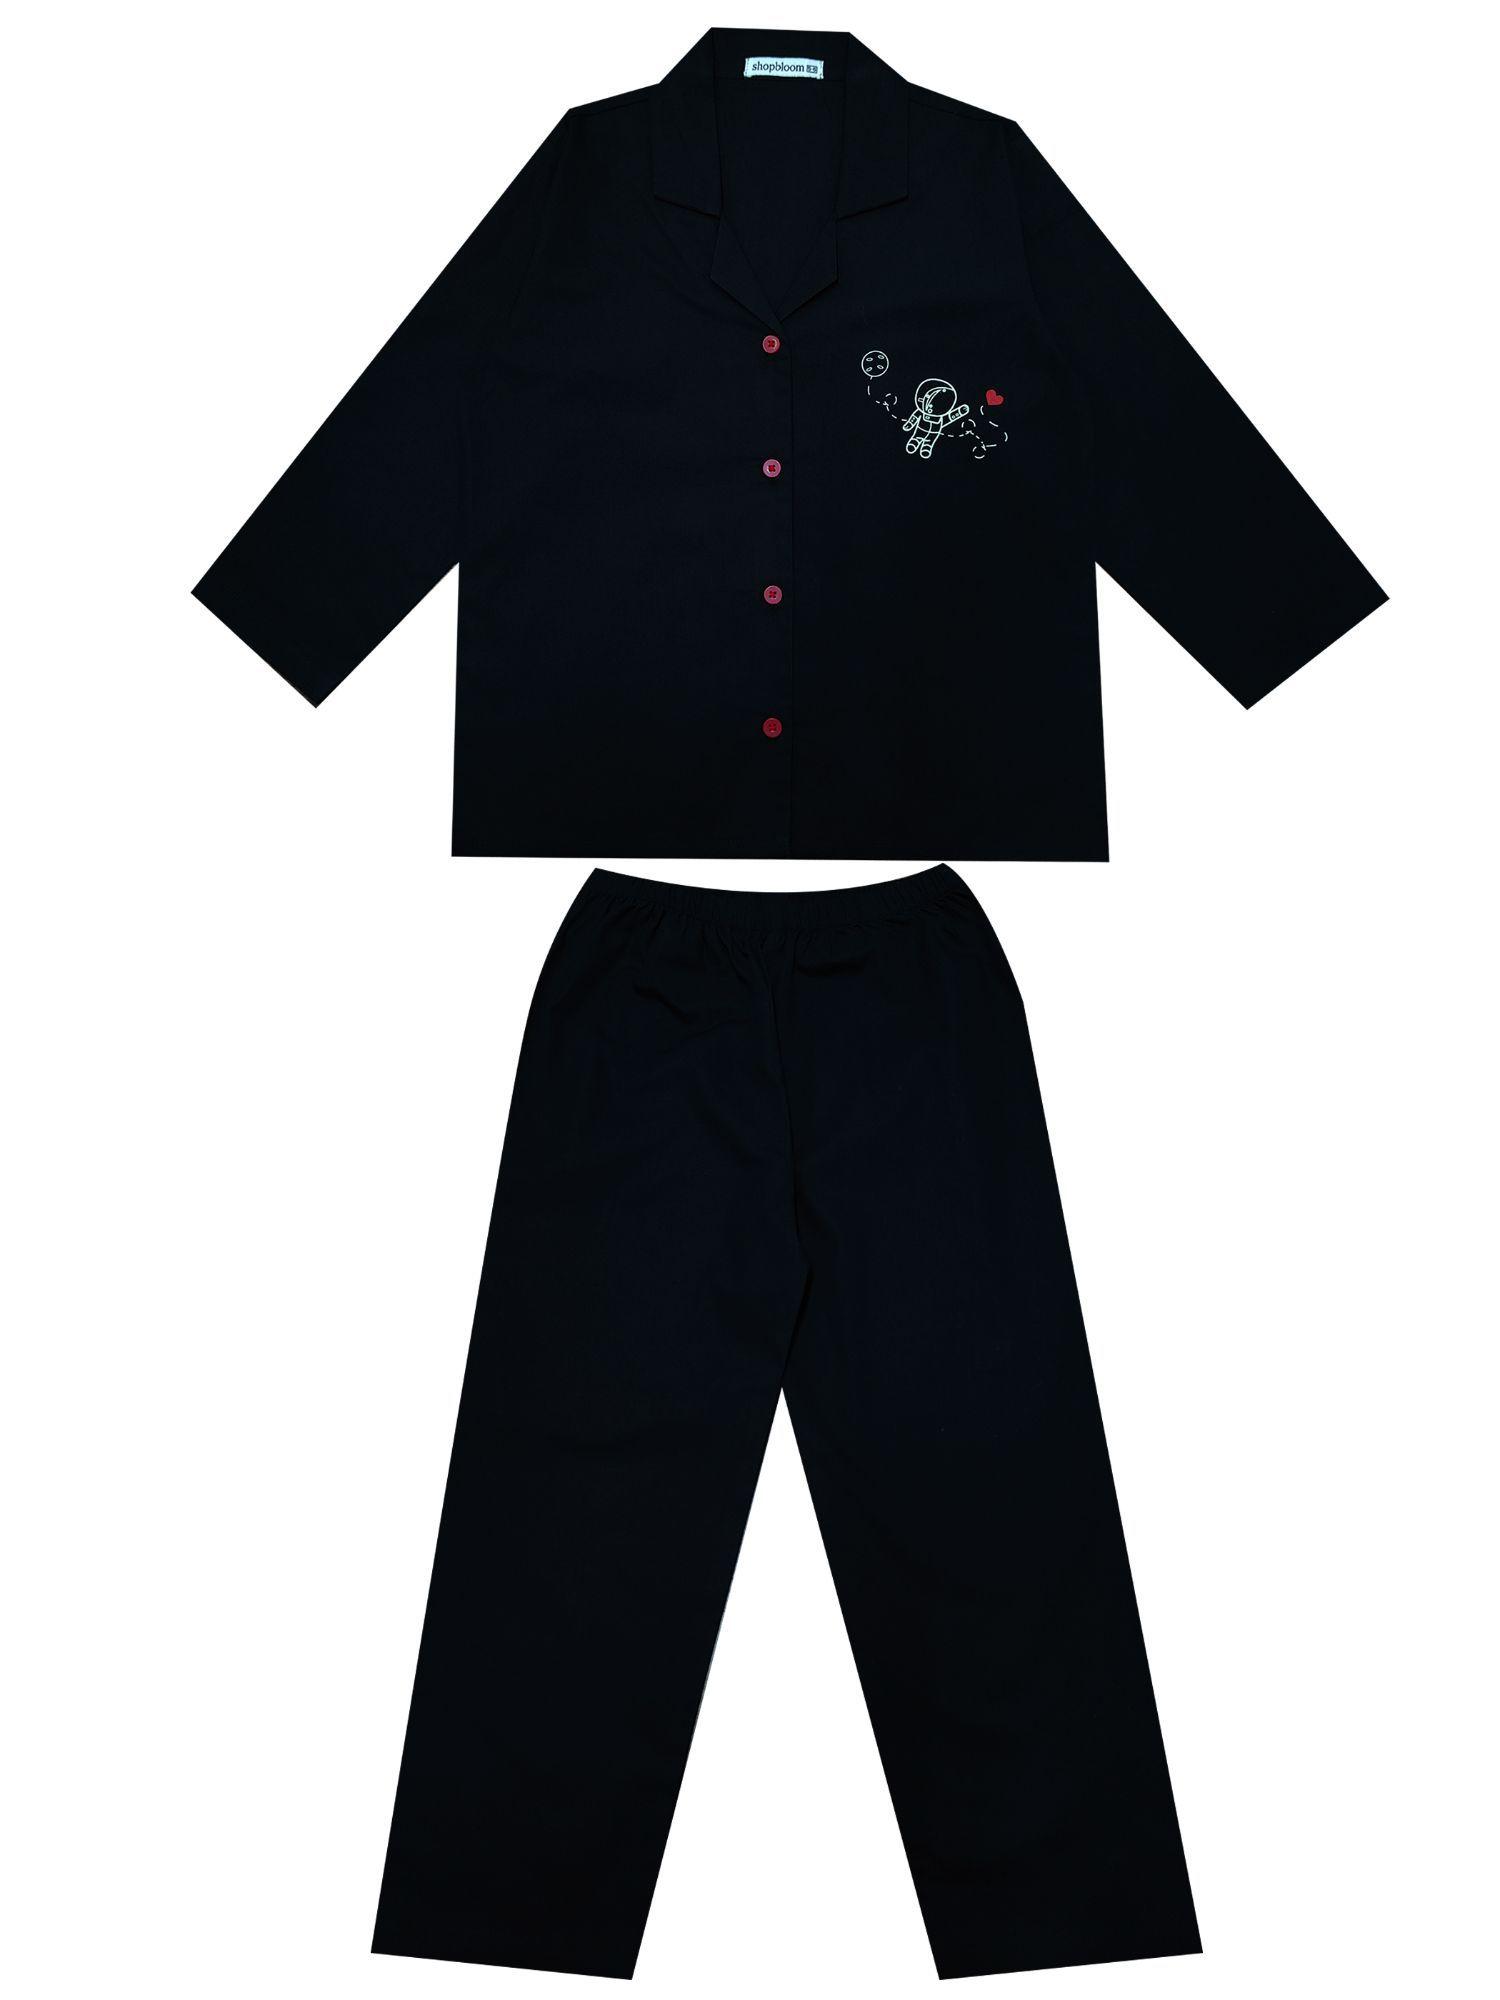 glow-in-the-dark-peppa-print-long-sleeve-kids-night-suit-(set-of-2)